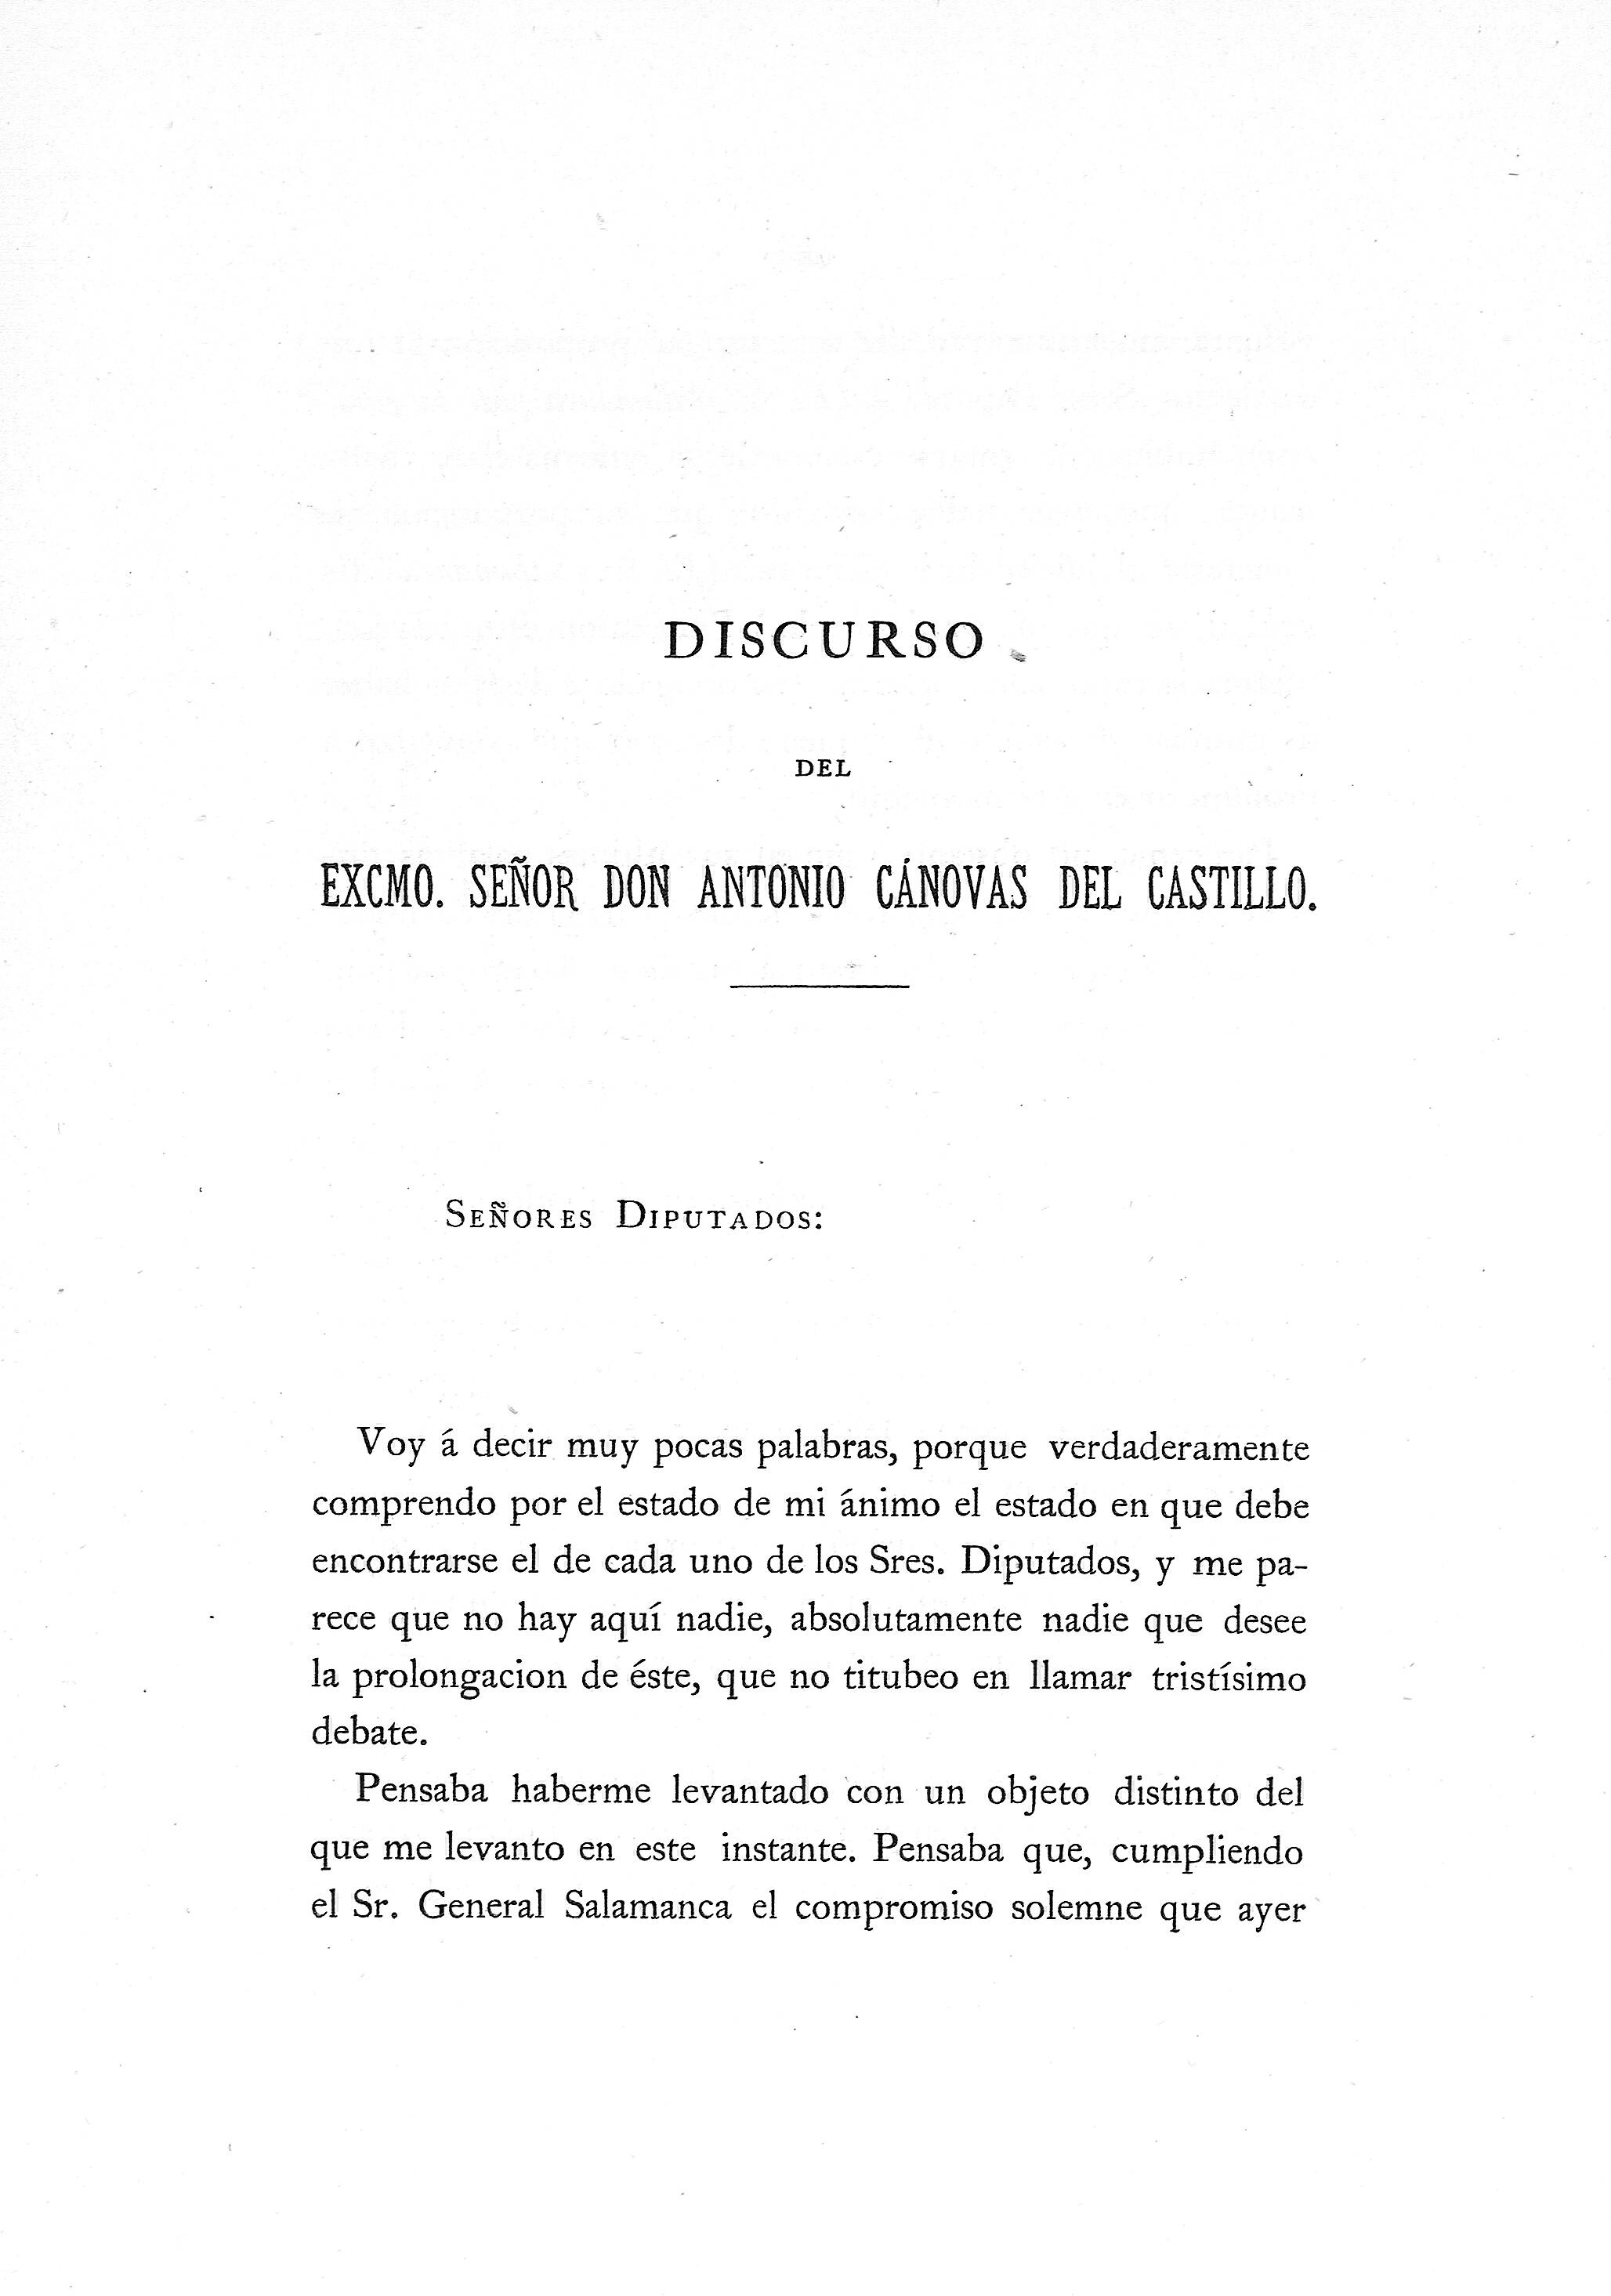 Discurso del Excmo. Señor Don Antonio Cánovas del Castillo